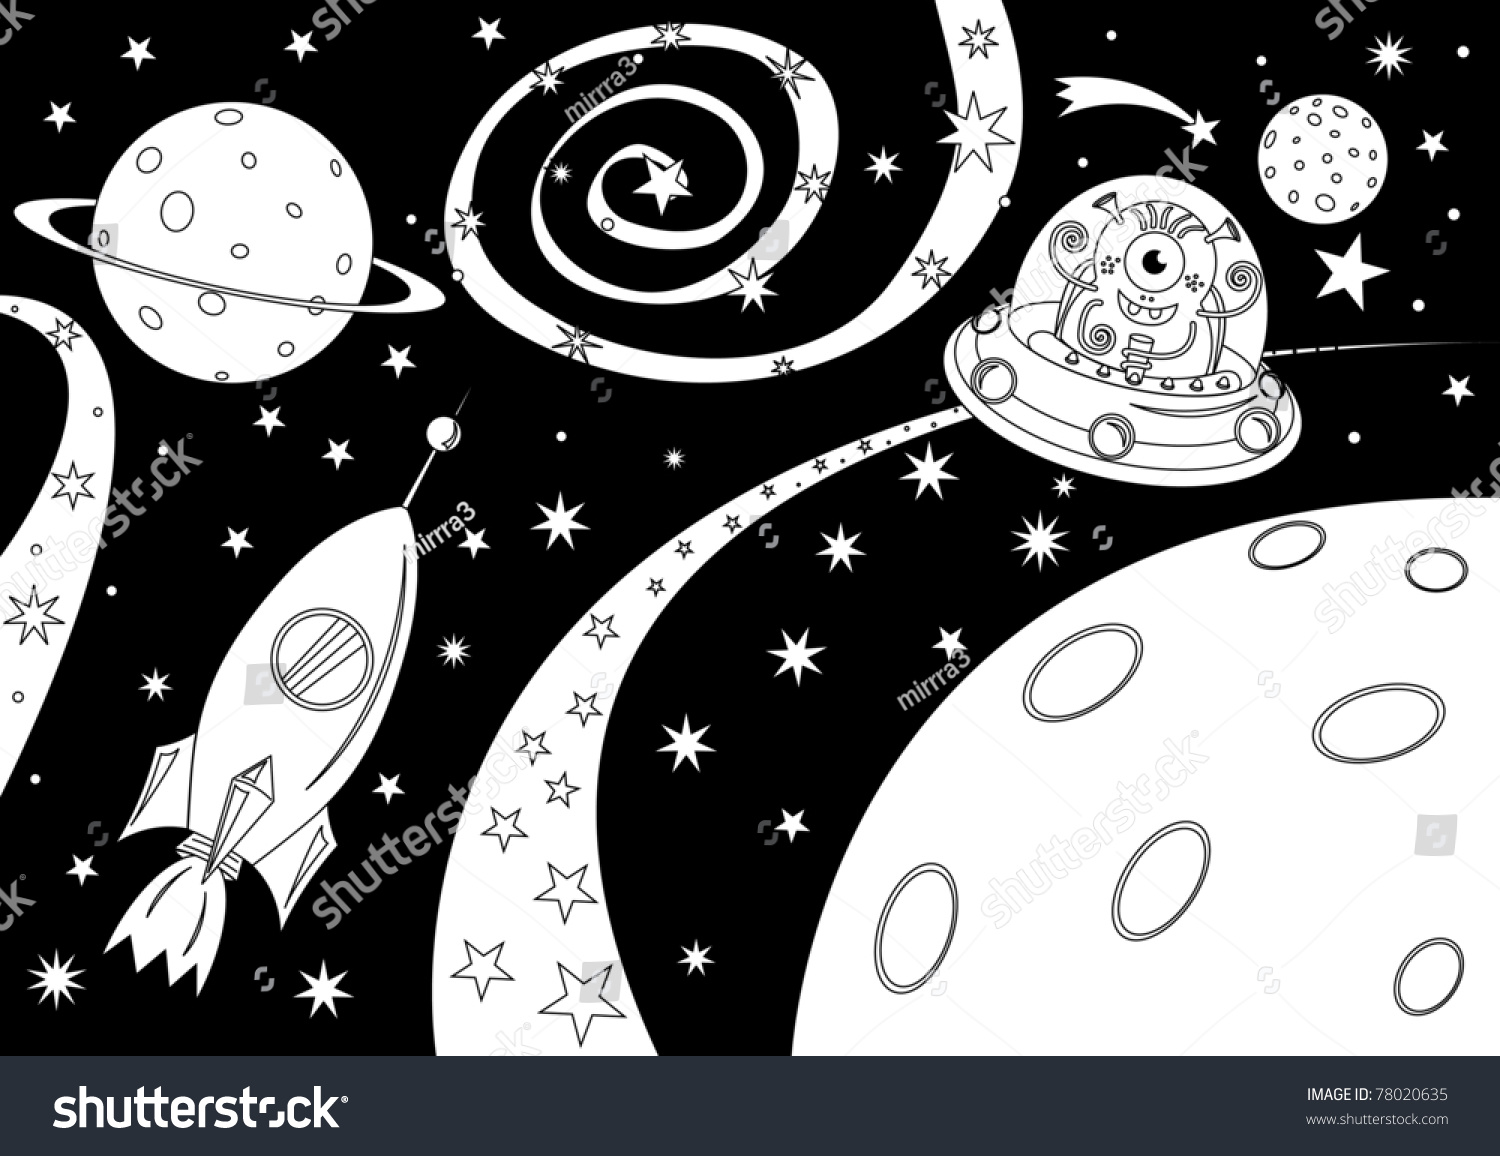 Векторные рисунки на космическую тему чёрно-белые